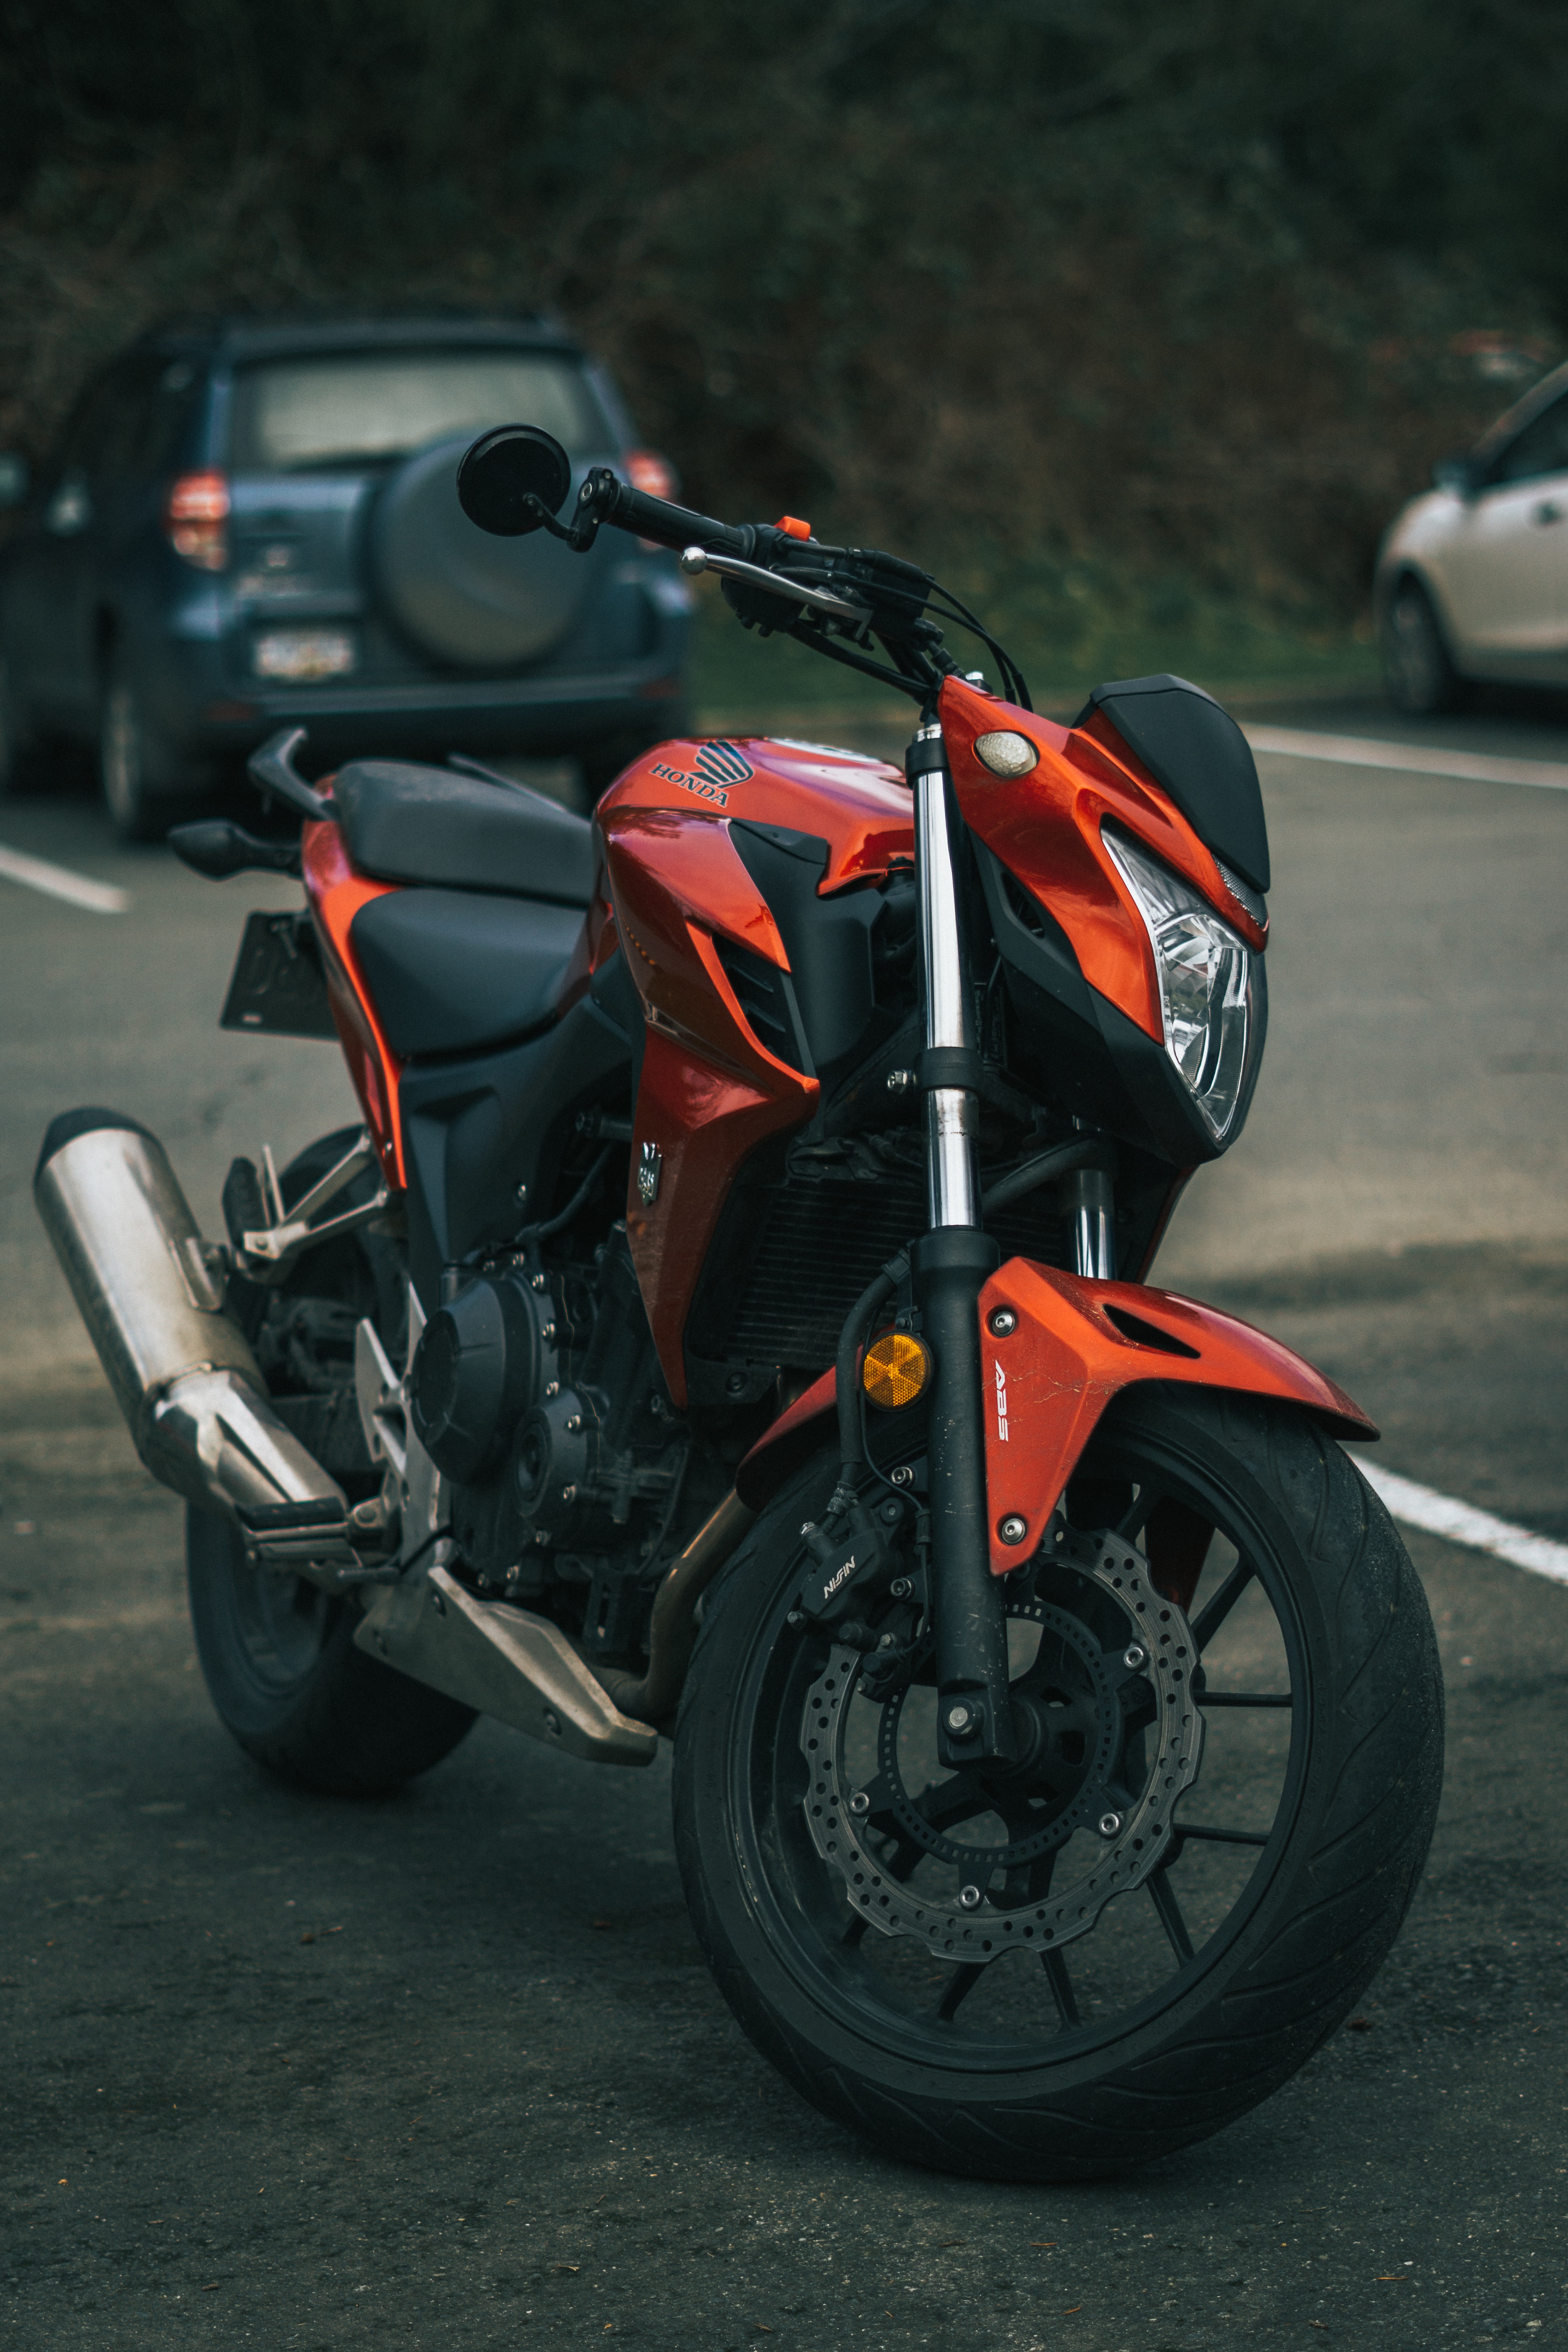 honda, motorcycles, bike, black, red, motorcycle